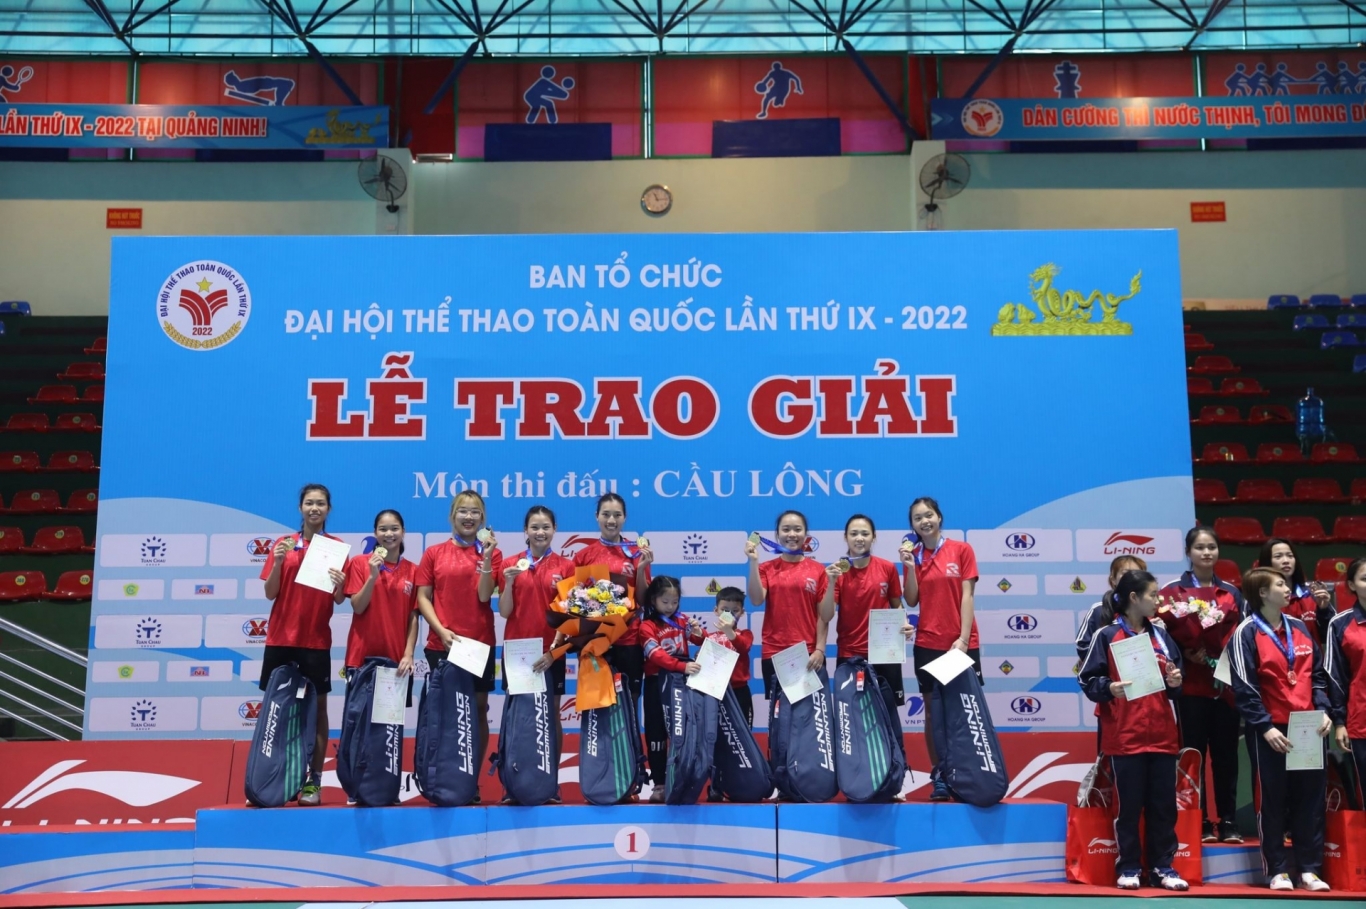 Đoàn thể thao nữ Thái Bình chứng tỏ đẳng cấp khi giành tấm HCV nội dung đồng đội